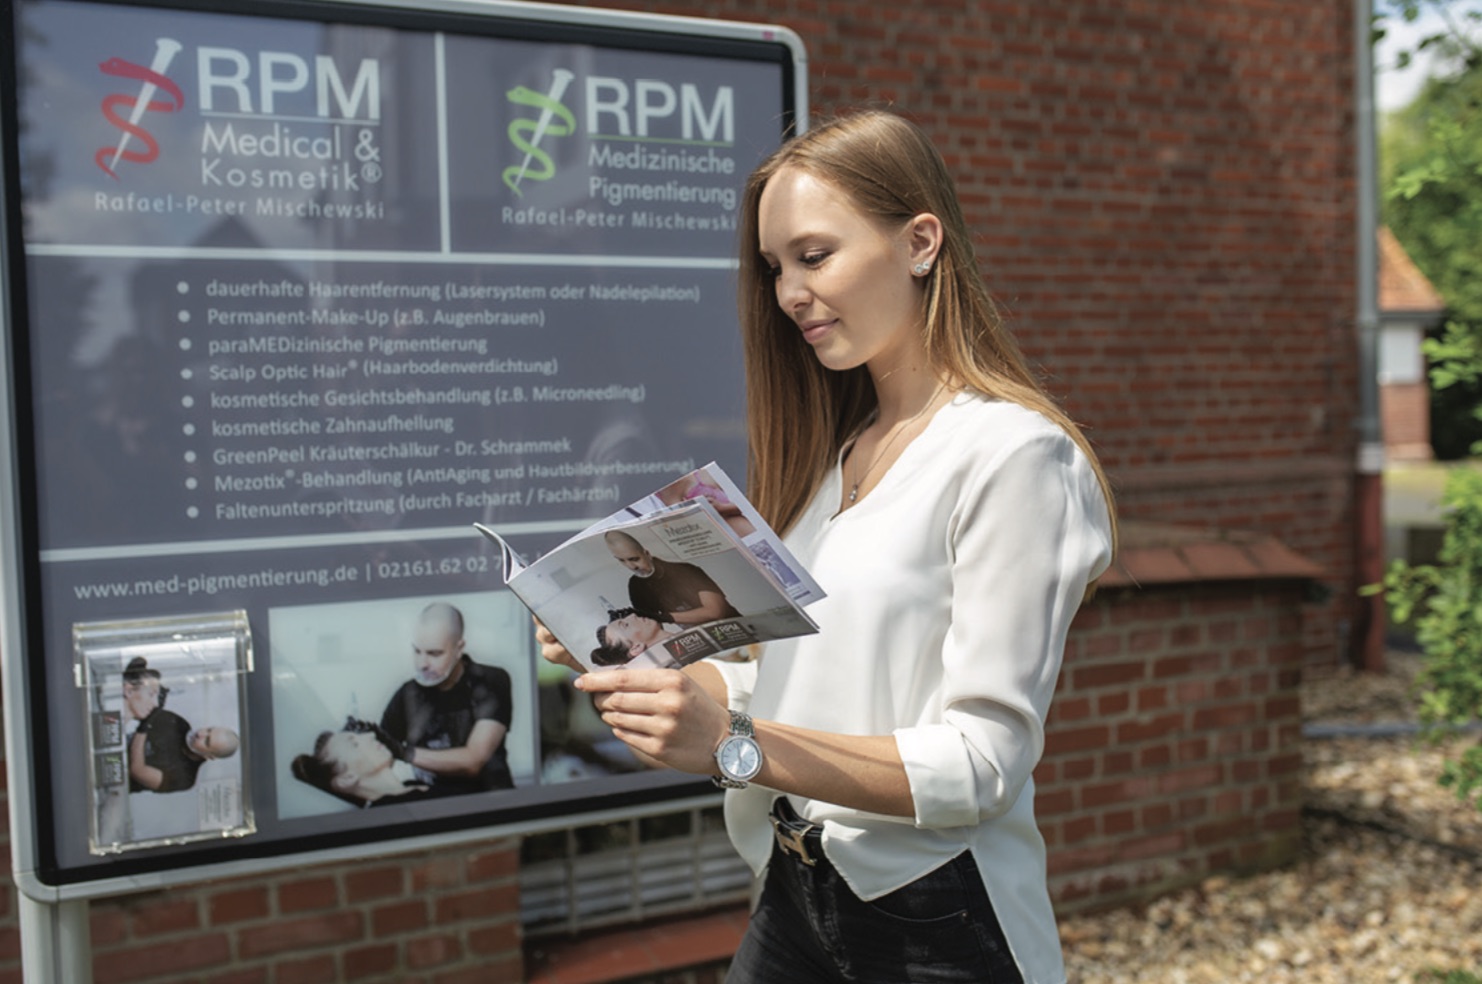 Das Behandlungsstudio RPM Medical & Kosmetik befindet sich im Denkmalbereich des Nordparkgeländes, nahe des Borussiaparks in Mönchengladbach. | RPM Medical & Kosmetik Rafael-Peter Mischewski Mönchengladbach